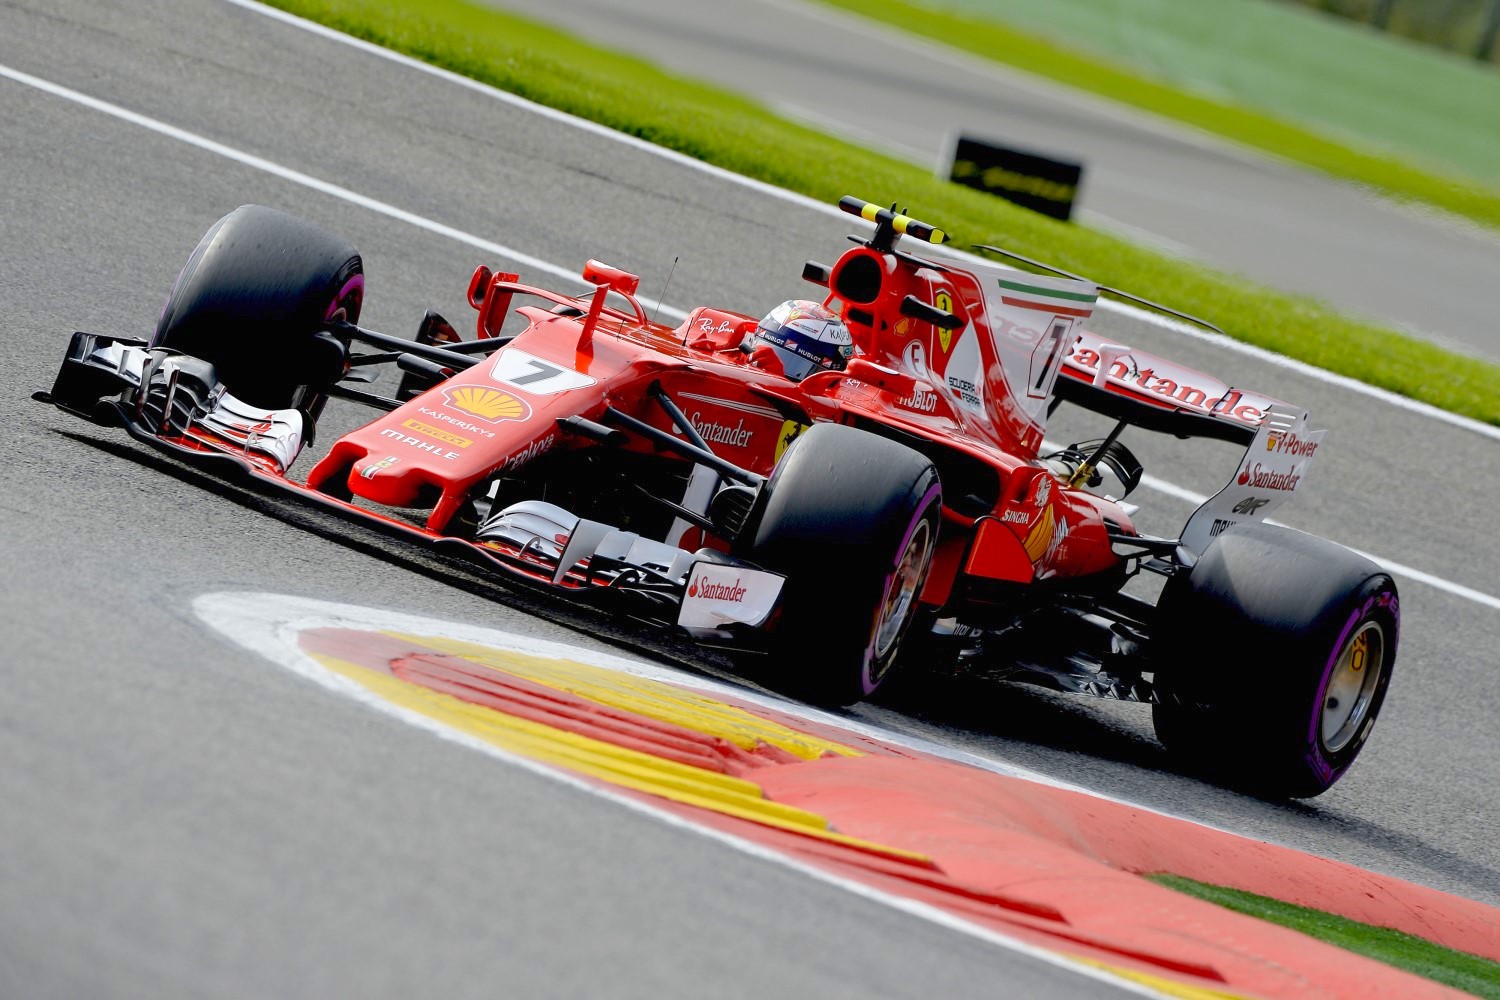 Raikkonen was 2nd quick in the #7 Ferrari